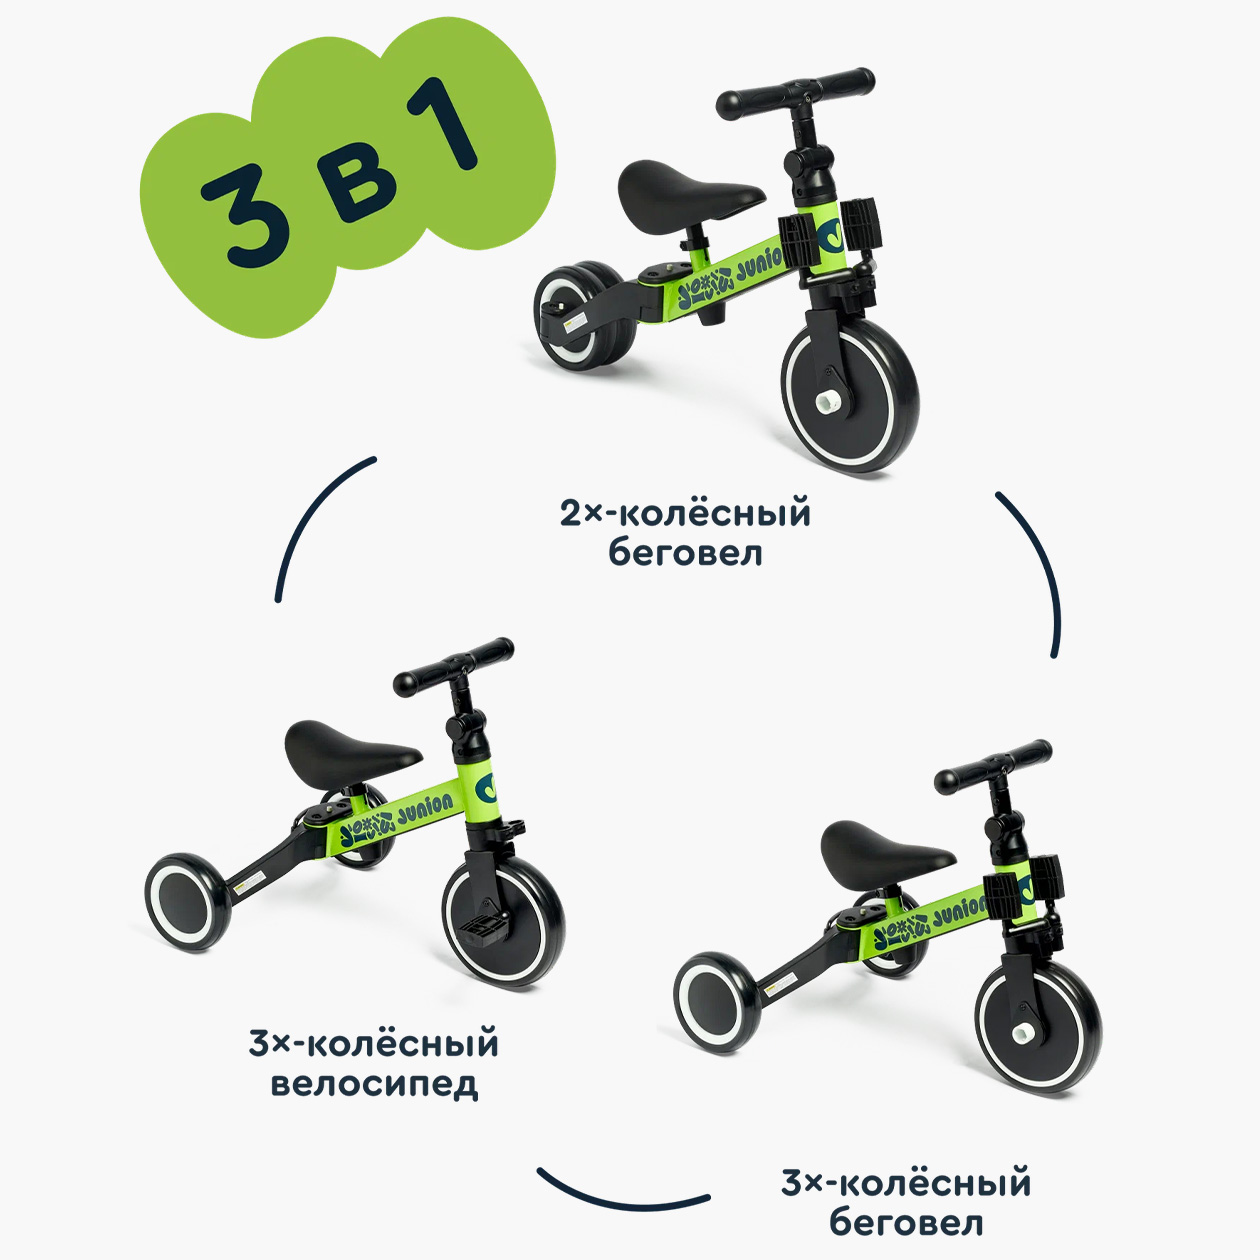 Некоторые модели могут трансформироваться из трехколесной в двухколесную, а также в велосипед. Источник: market.yandex.ru